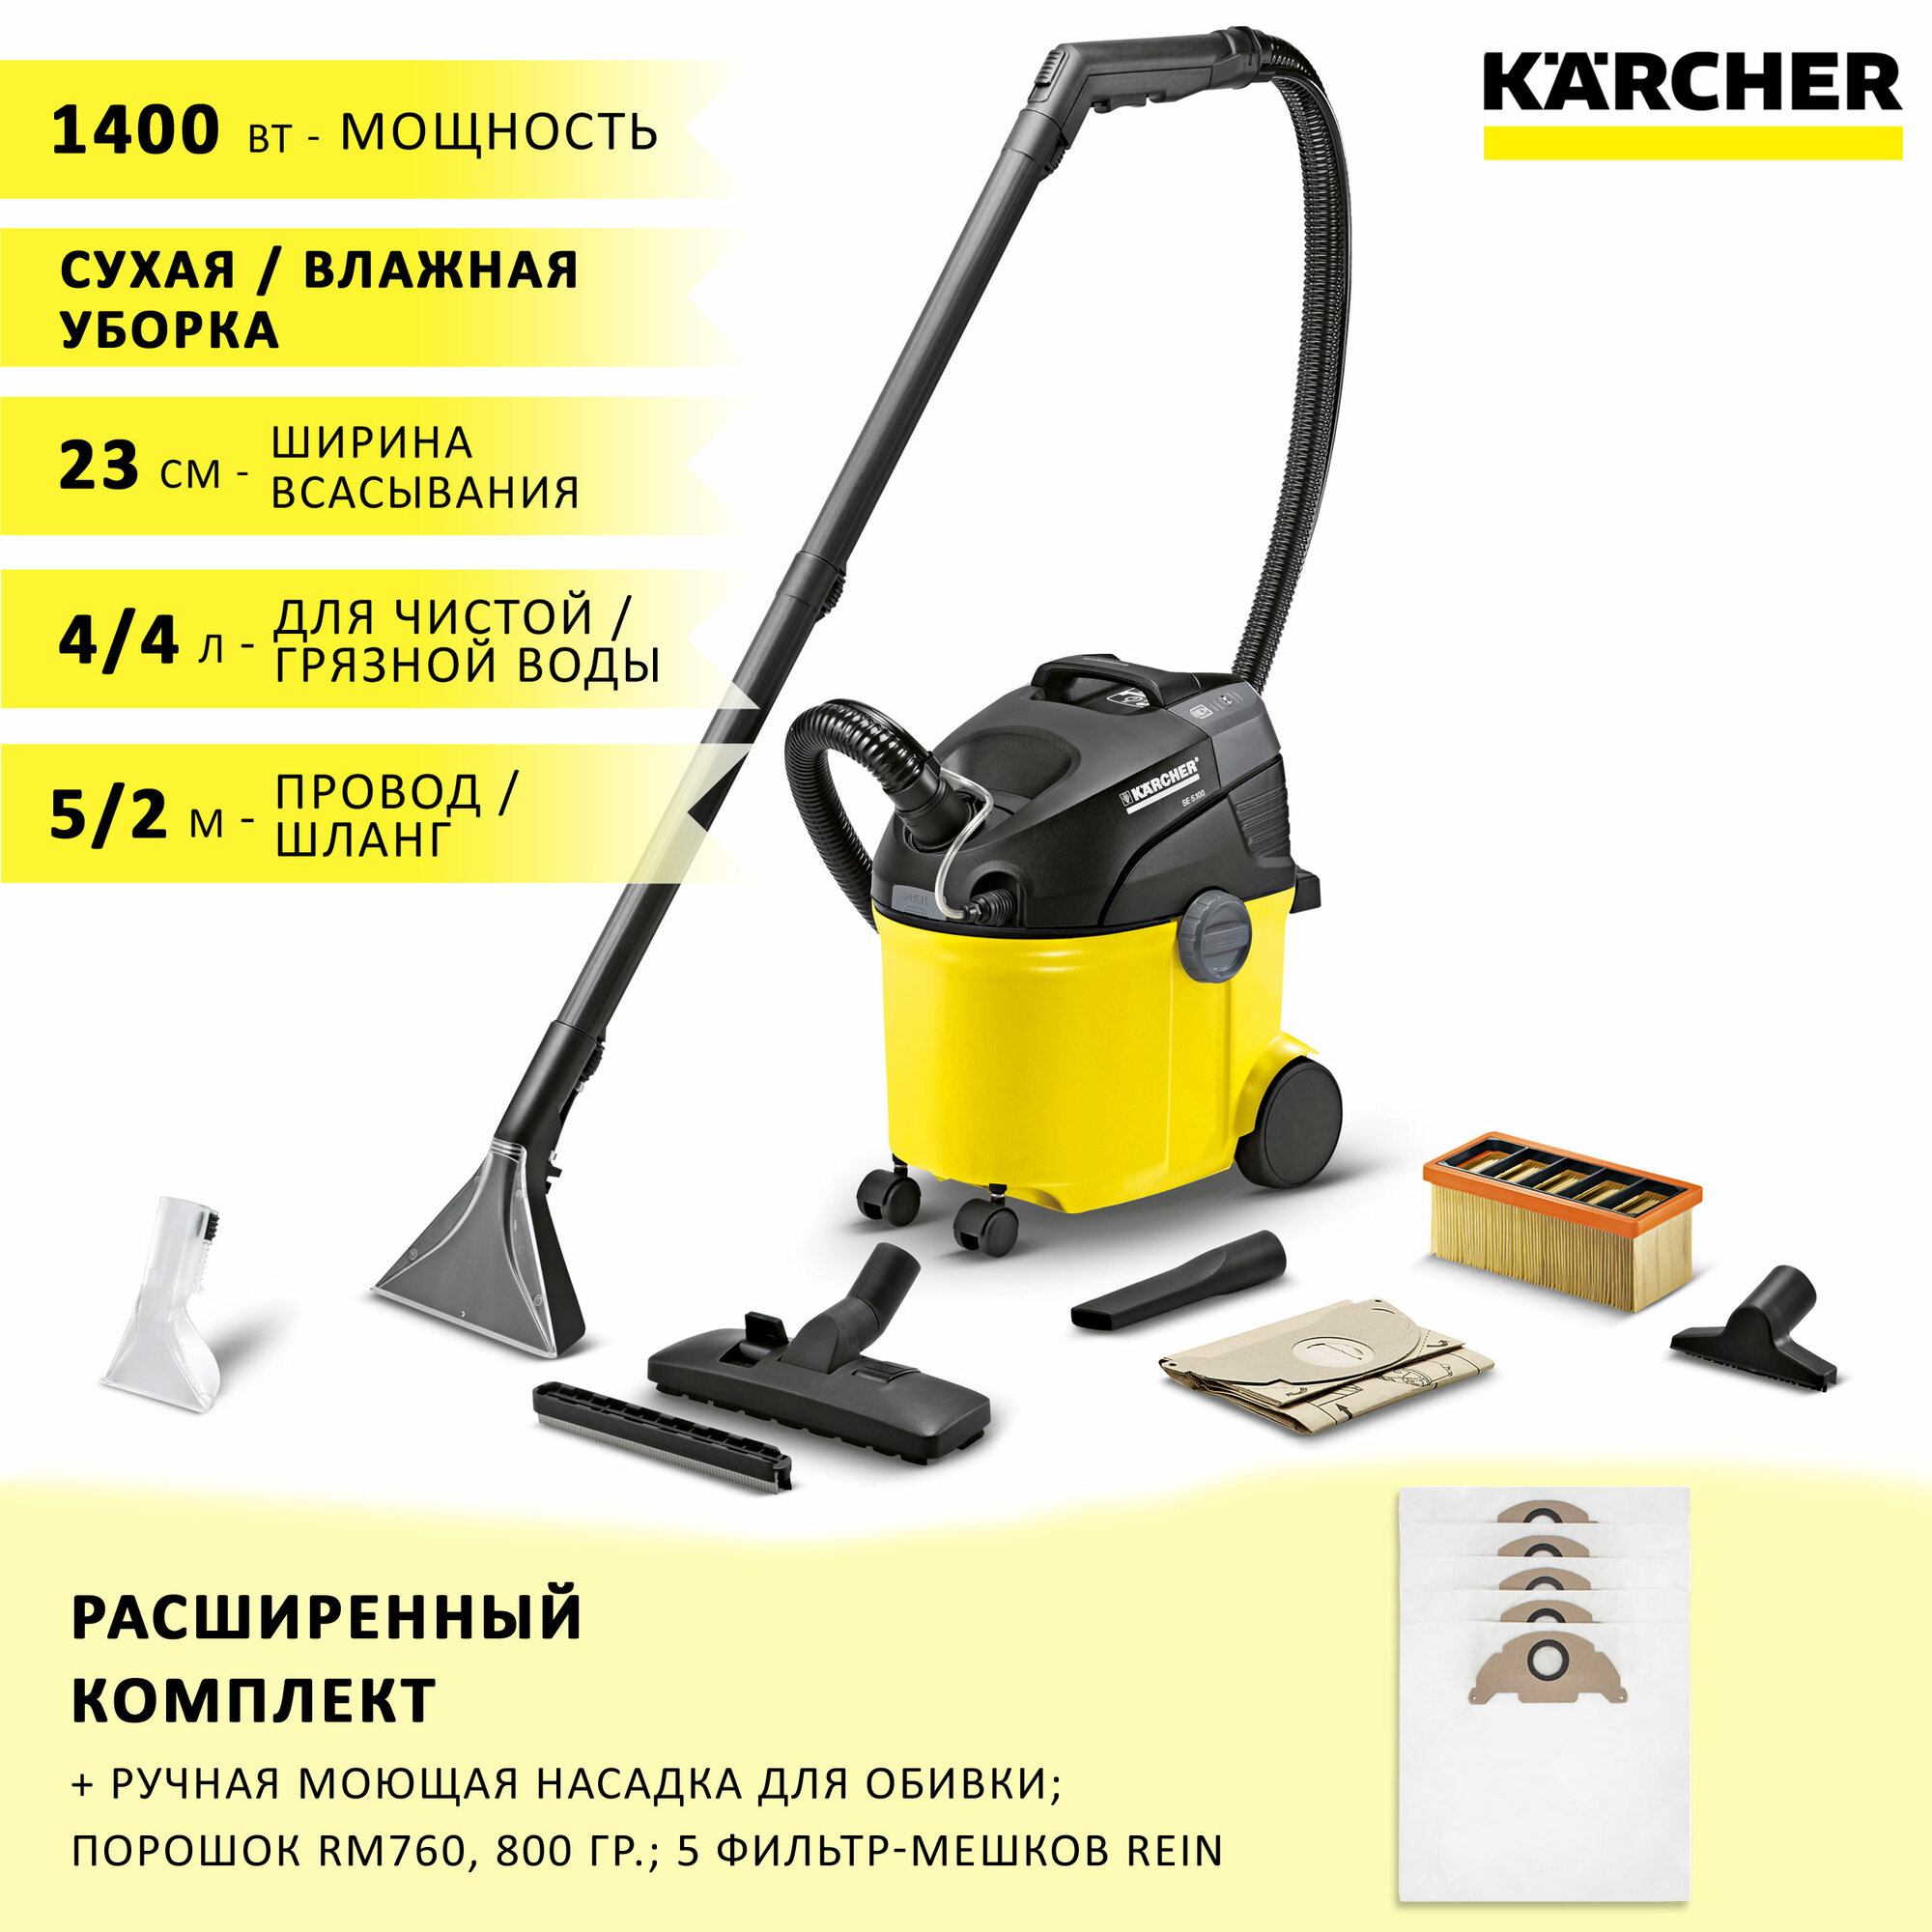 Моющий пылесос Karcher SE 5.100 для сухой и влажной уборки (химчистки) + насадка для мебели, средство RM 760, 800 гр и 5 фильтр-мешков